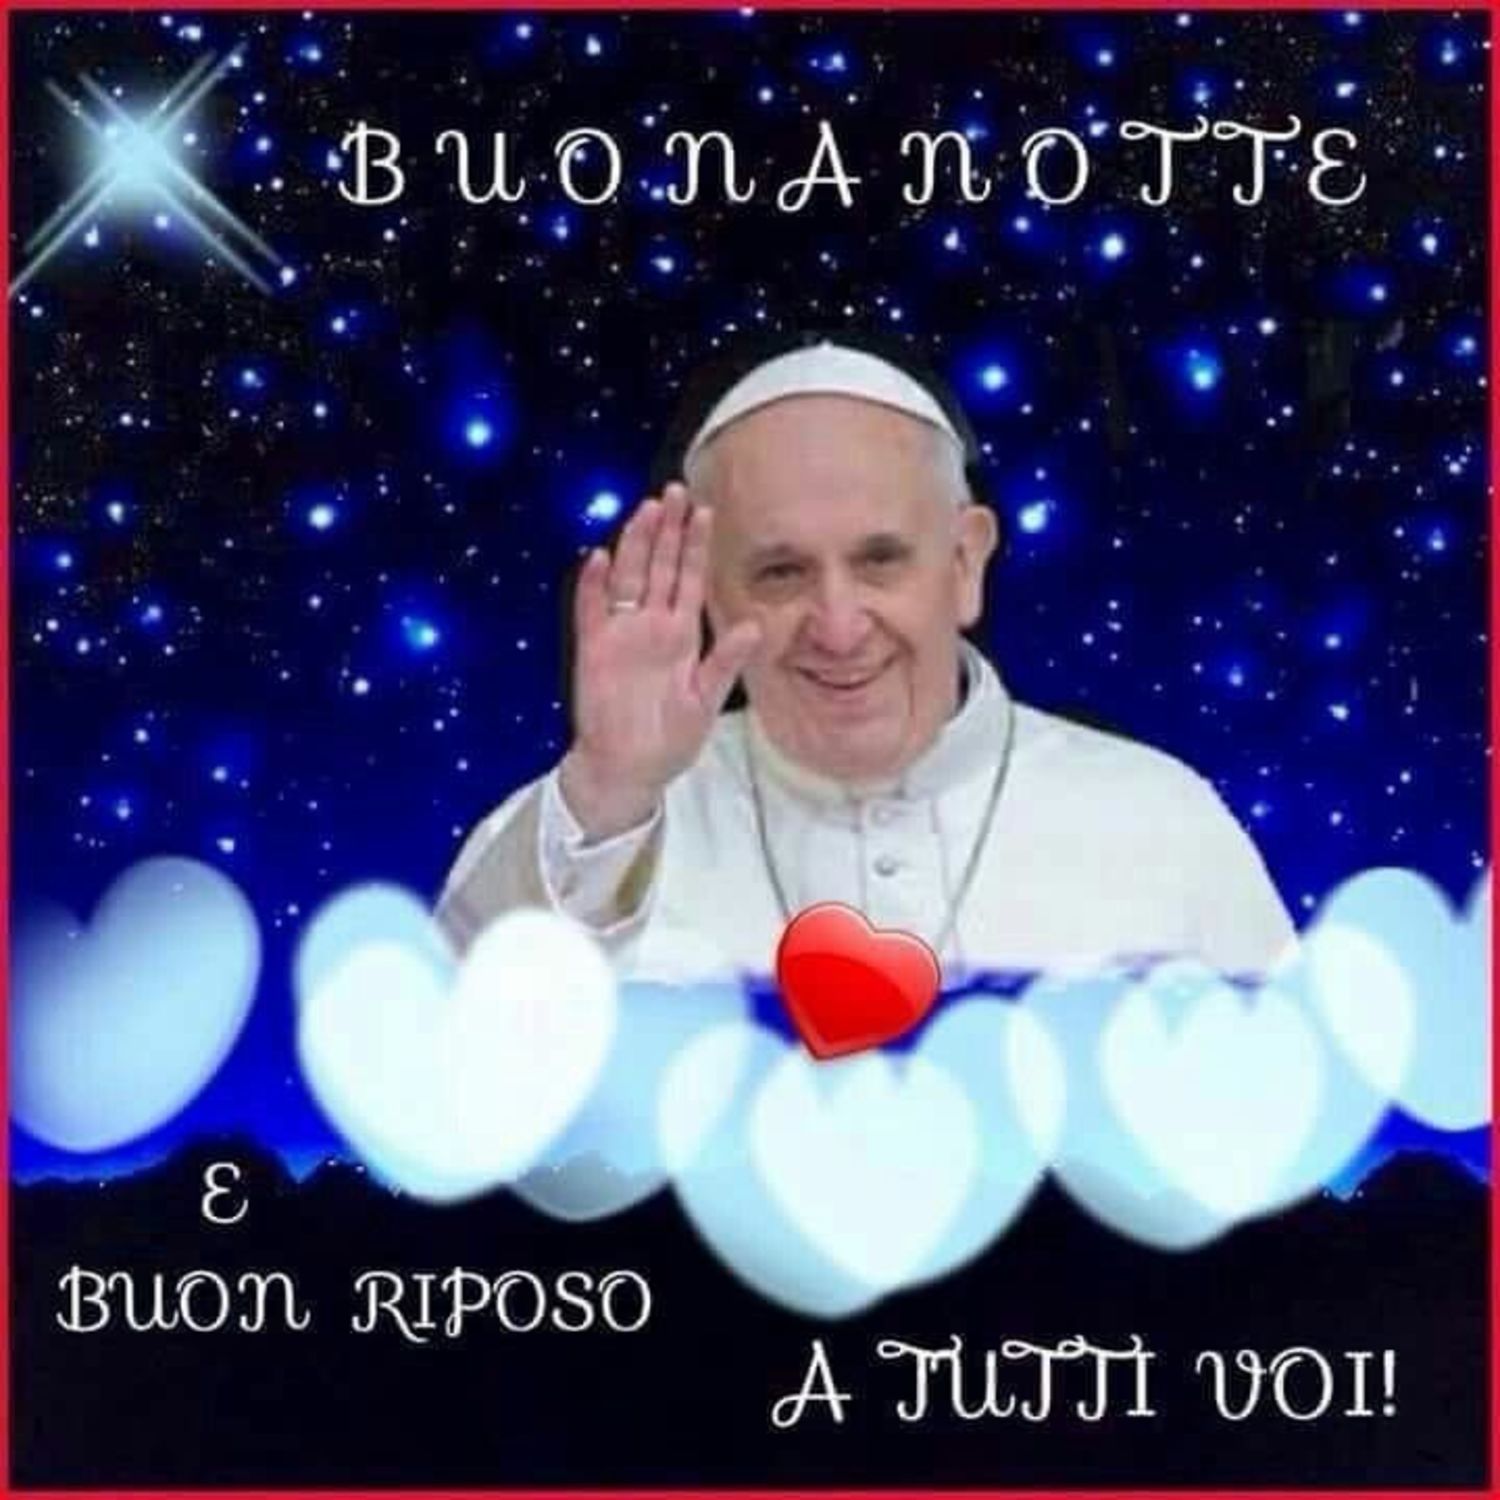 Buonanotte immagini dal Papa Francesco 2